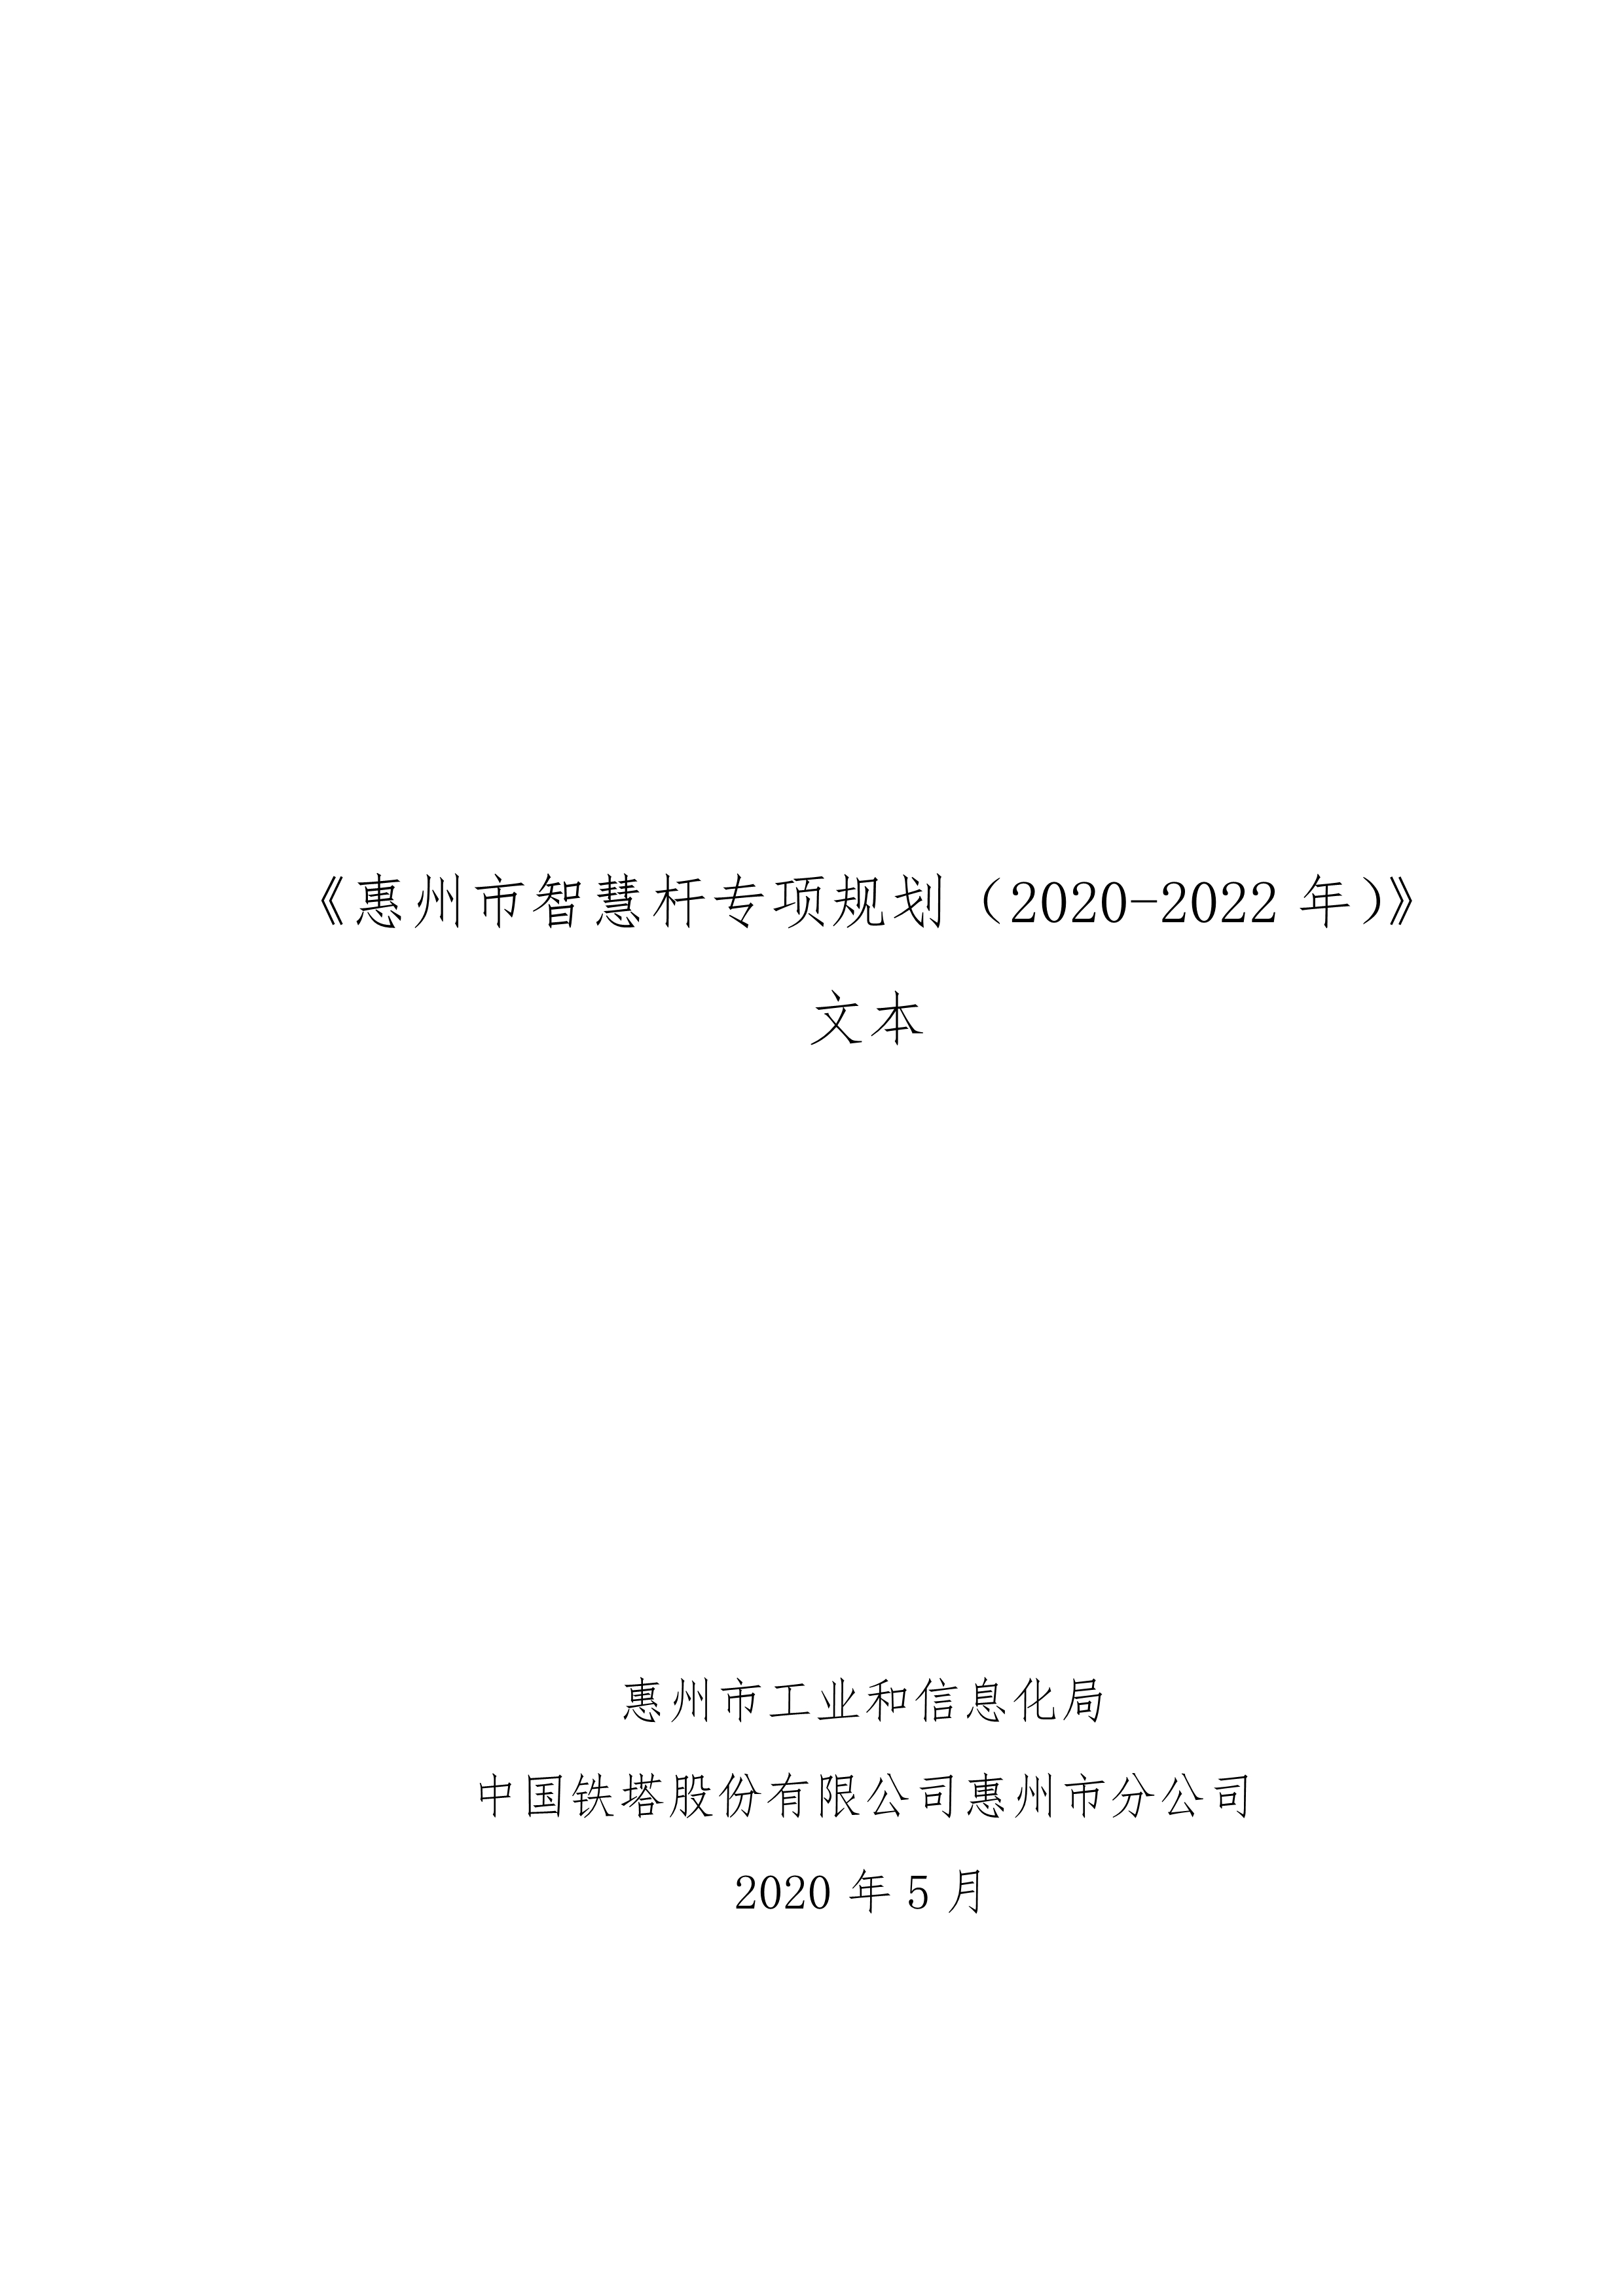 060210331331_0《惠州市智慧杆专项规划2020-2022年》_1.Jpeg